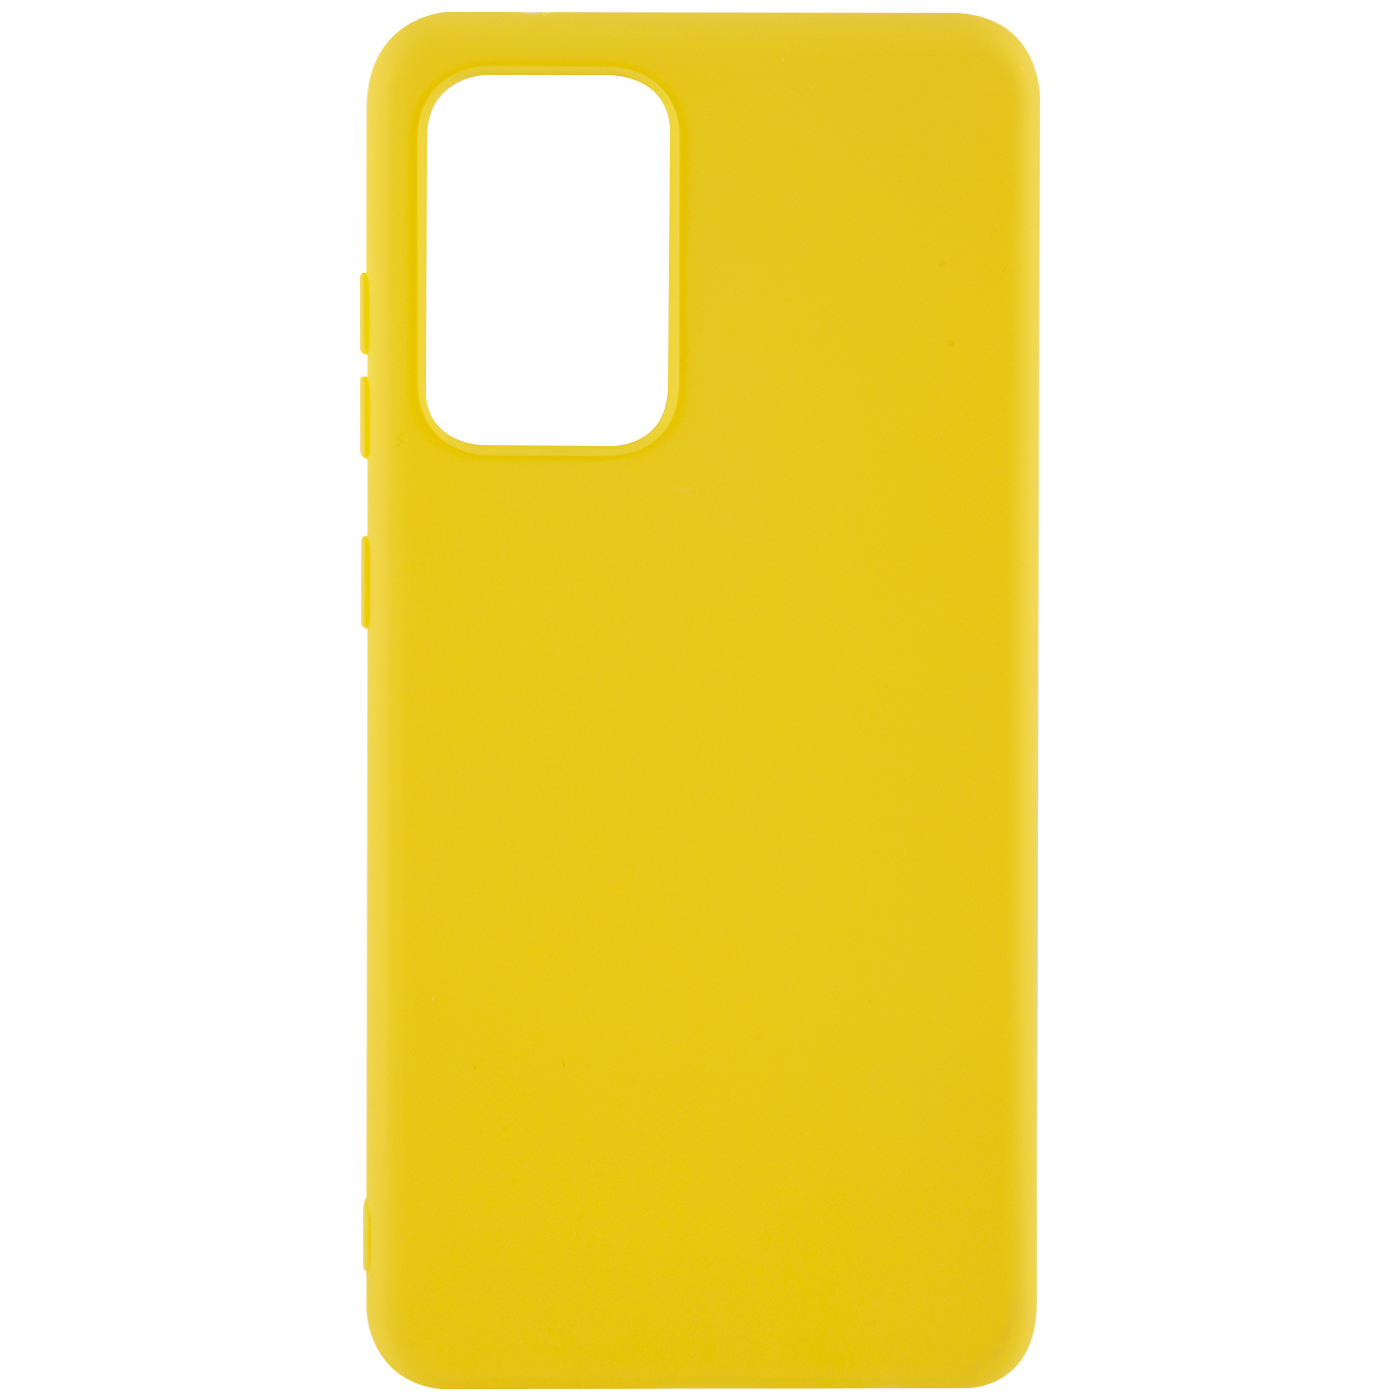 Чехол защитный Red Line Ultimate для Samsung Galaxy A52, желтый УТ000024010 чехол защитный red line ultimate для vivo y19 y5s u3 u20 z5i желтый ут000022523